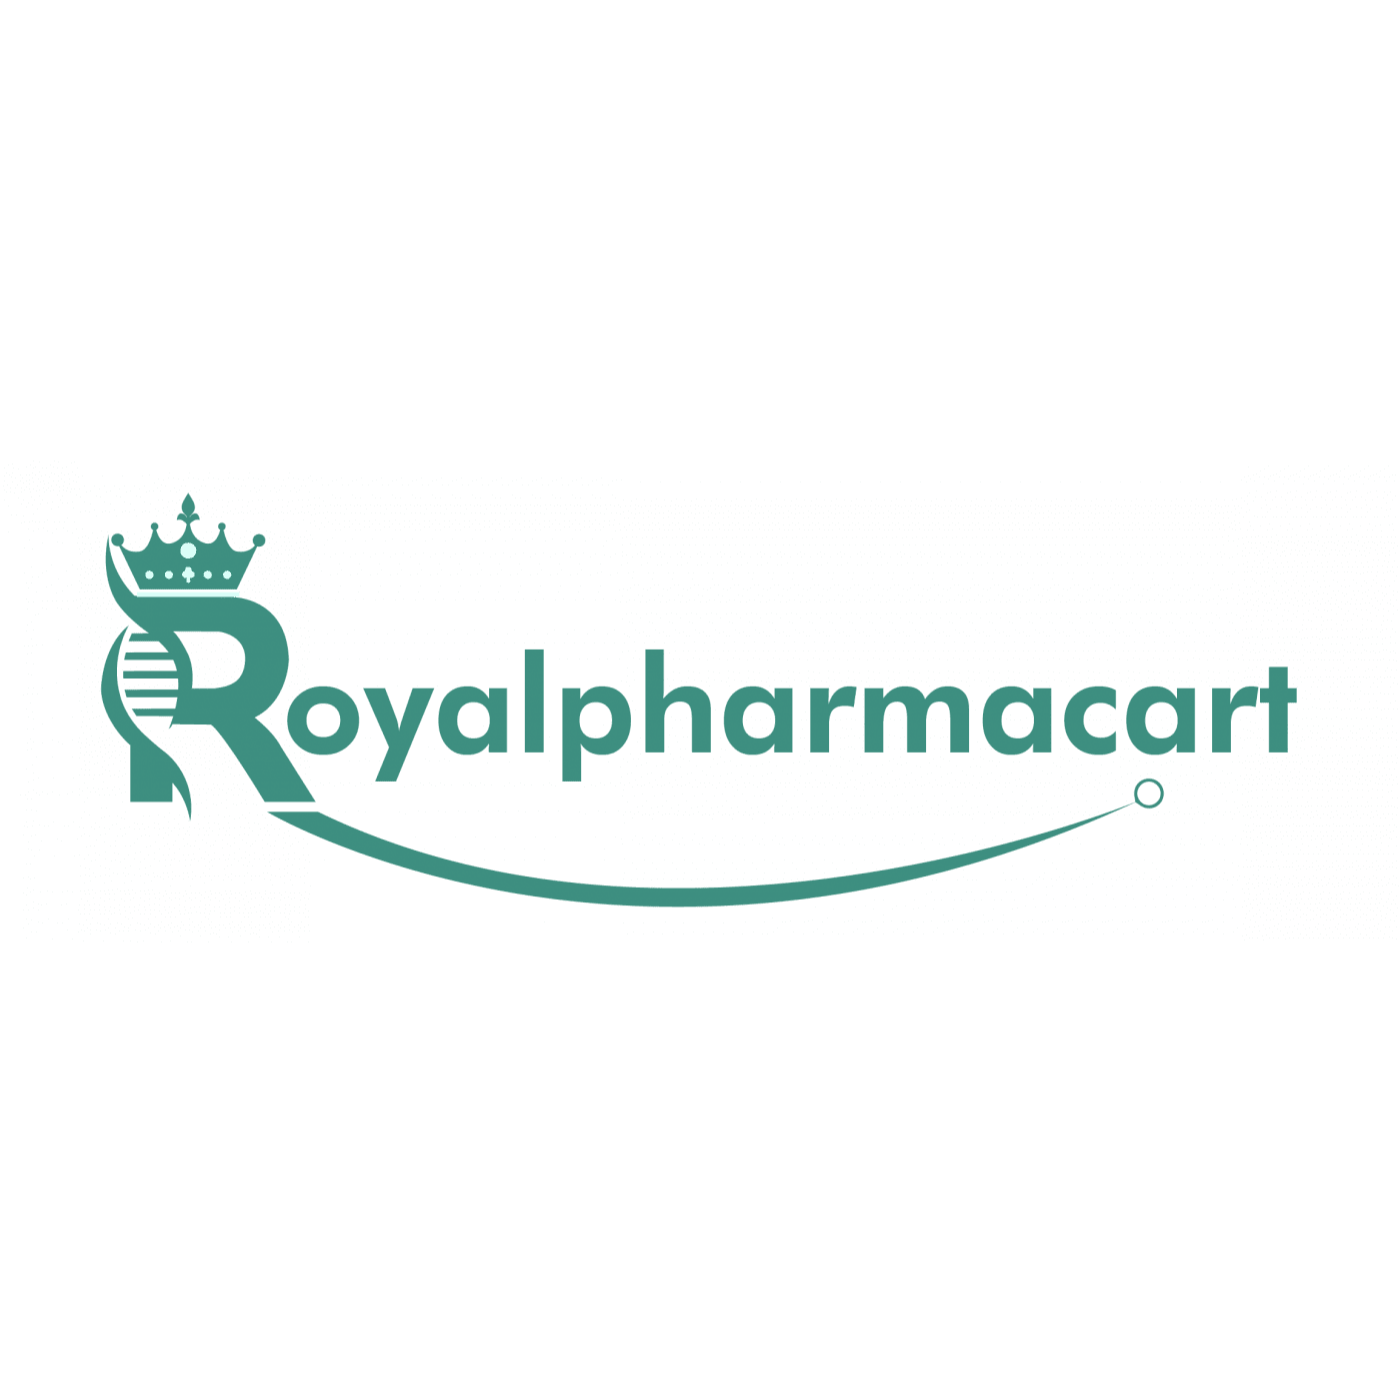 royalpharmacart